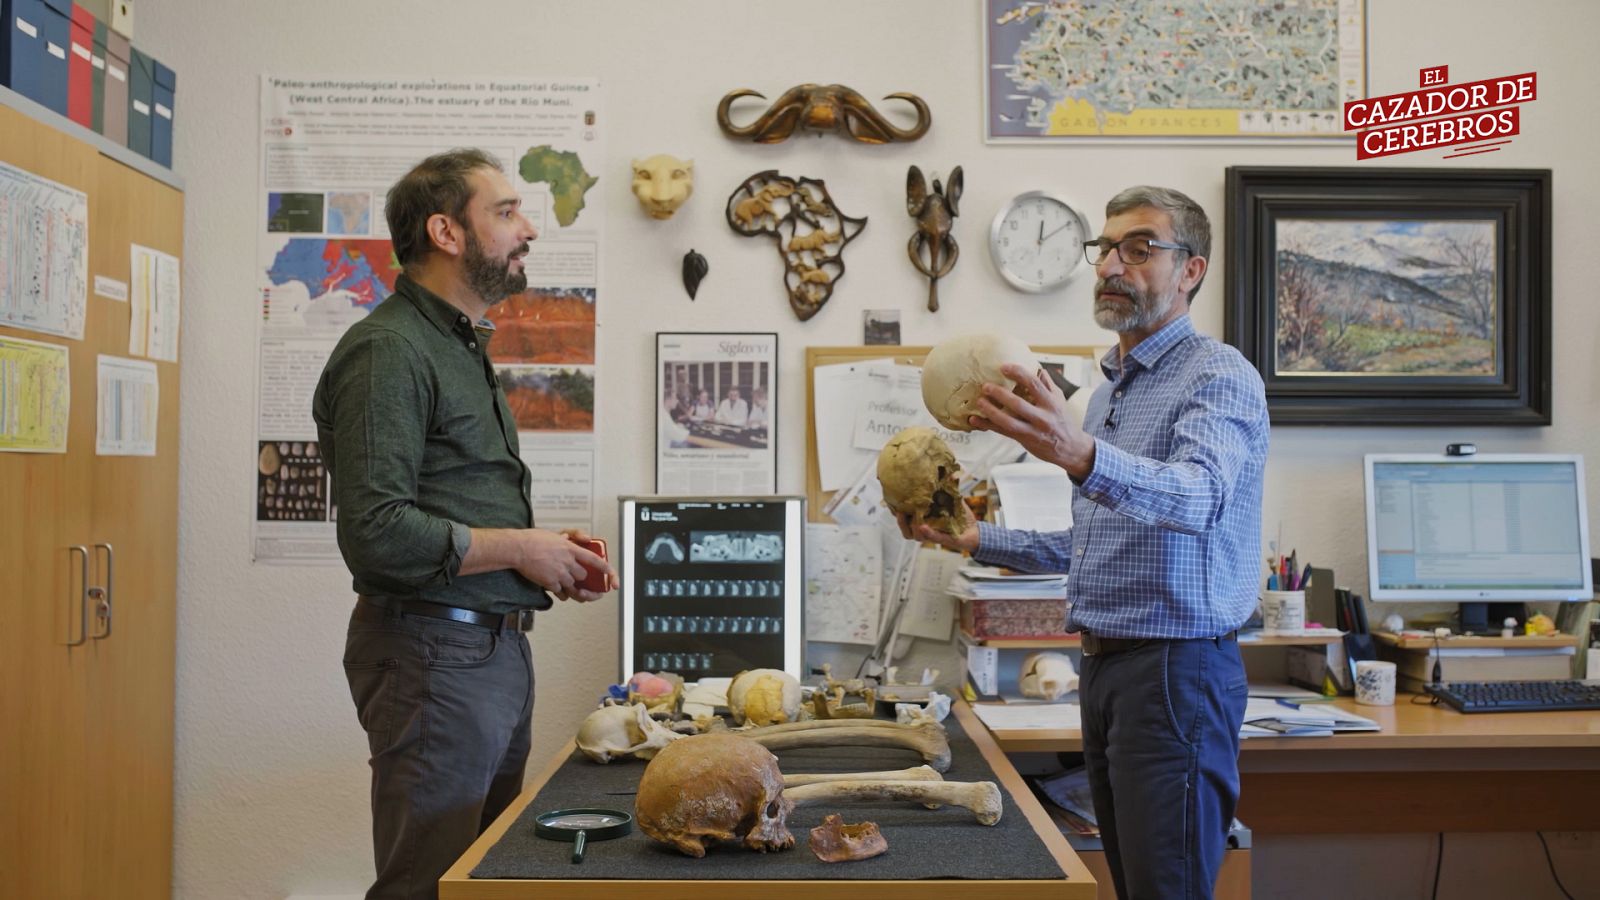 'La huella neandertal', avance del programa sobre los últimos hallazgos en neandertales